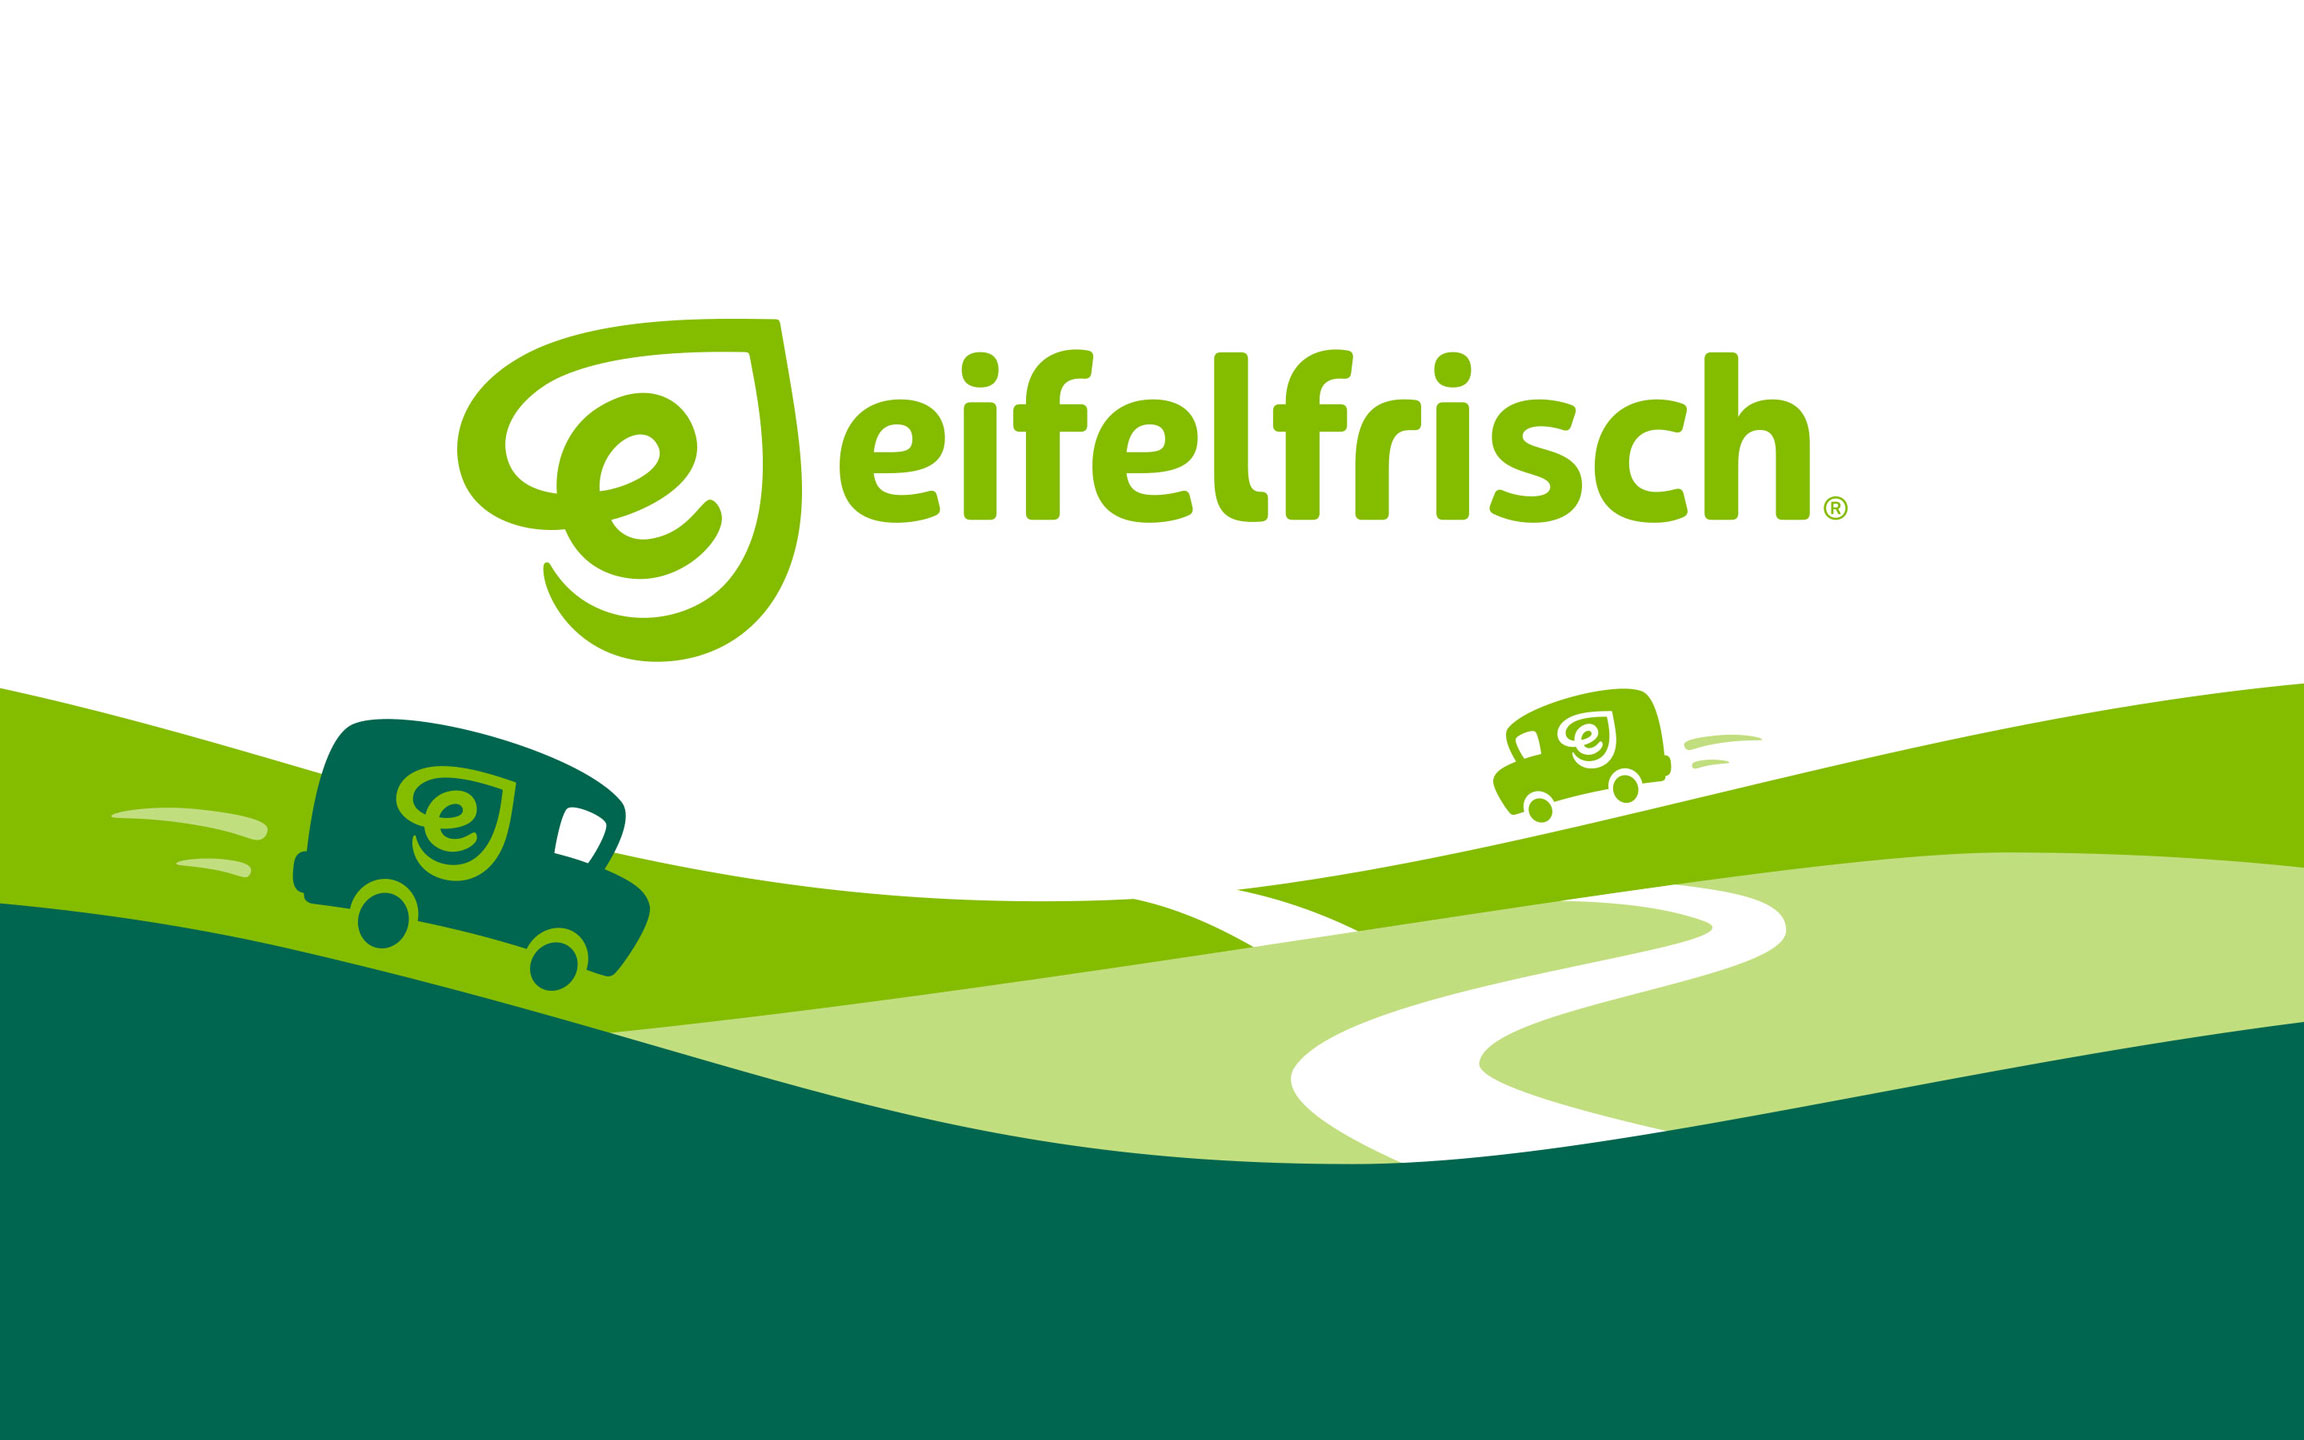 eifelfrisch Logo über grüner Illustration zum Lieferservice mit Lieferwagen, die über Hügel durch die Eifel fahren